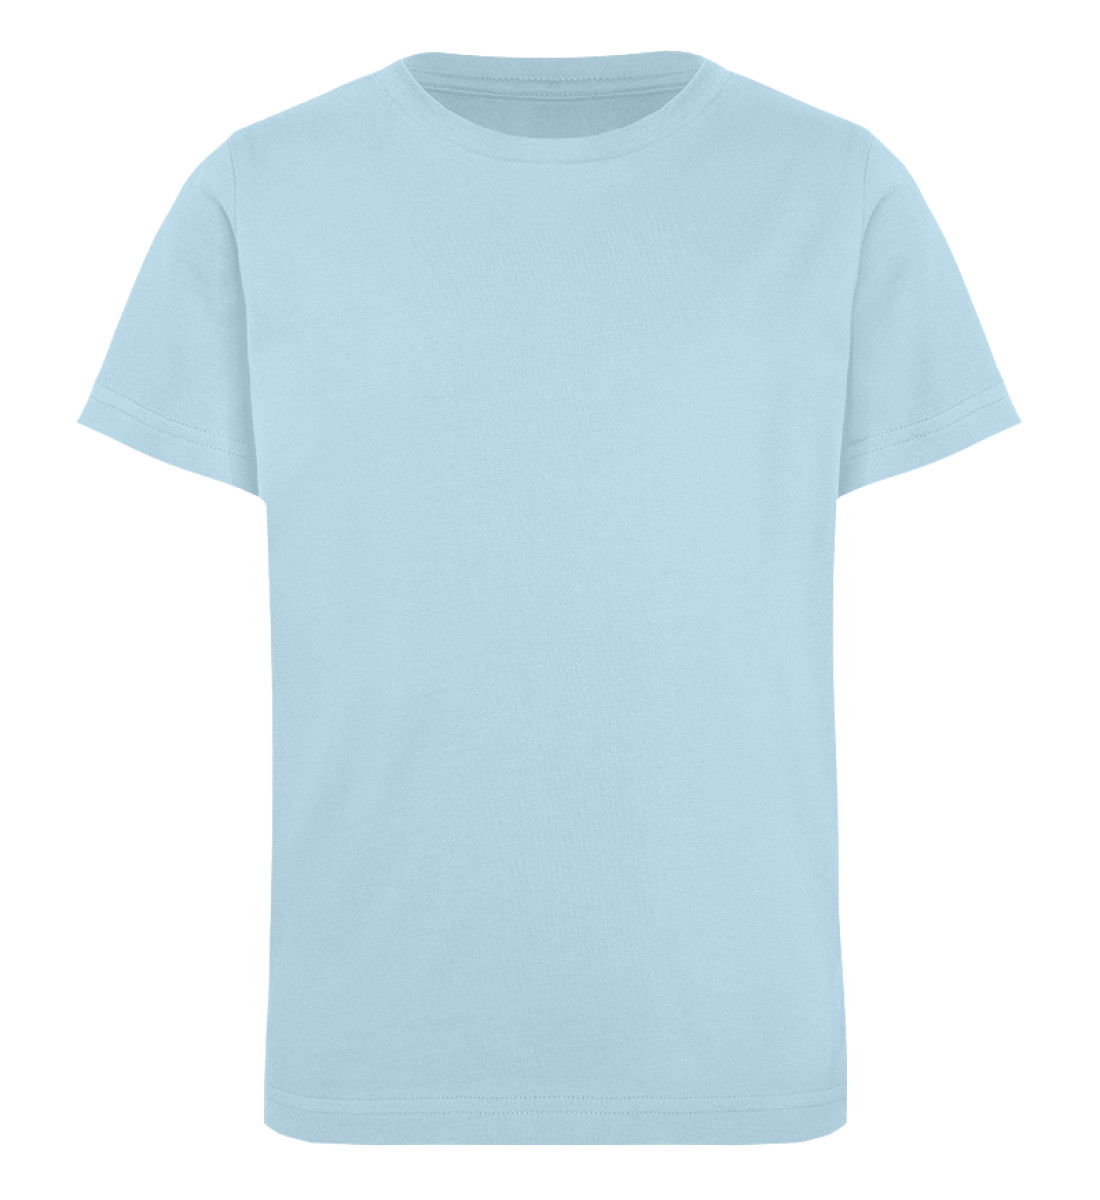 Beispiel - Kinder Organic T-Shirt-6888